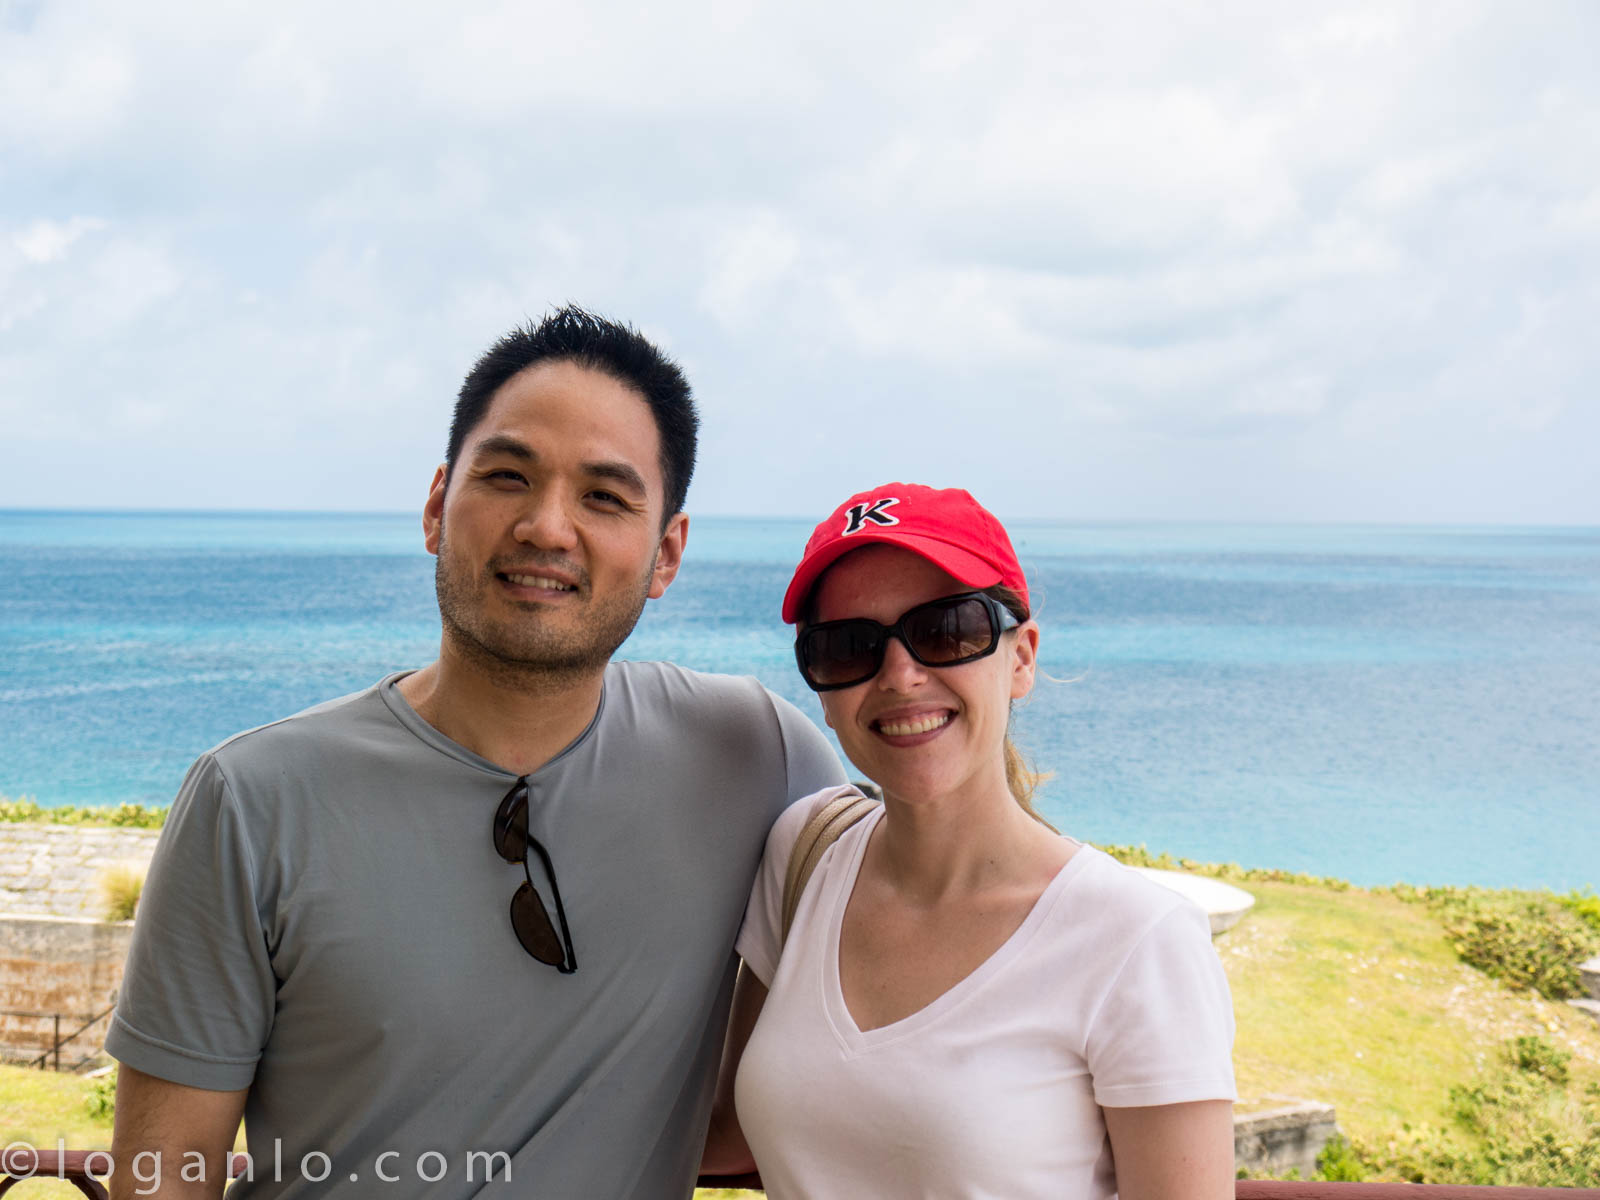 Logan and Alison in Bermuda